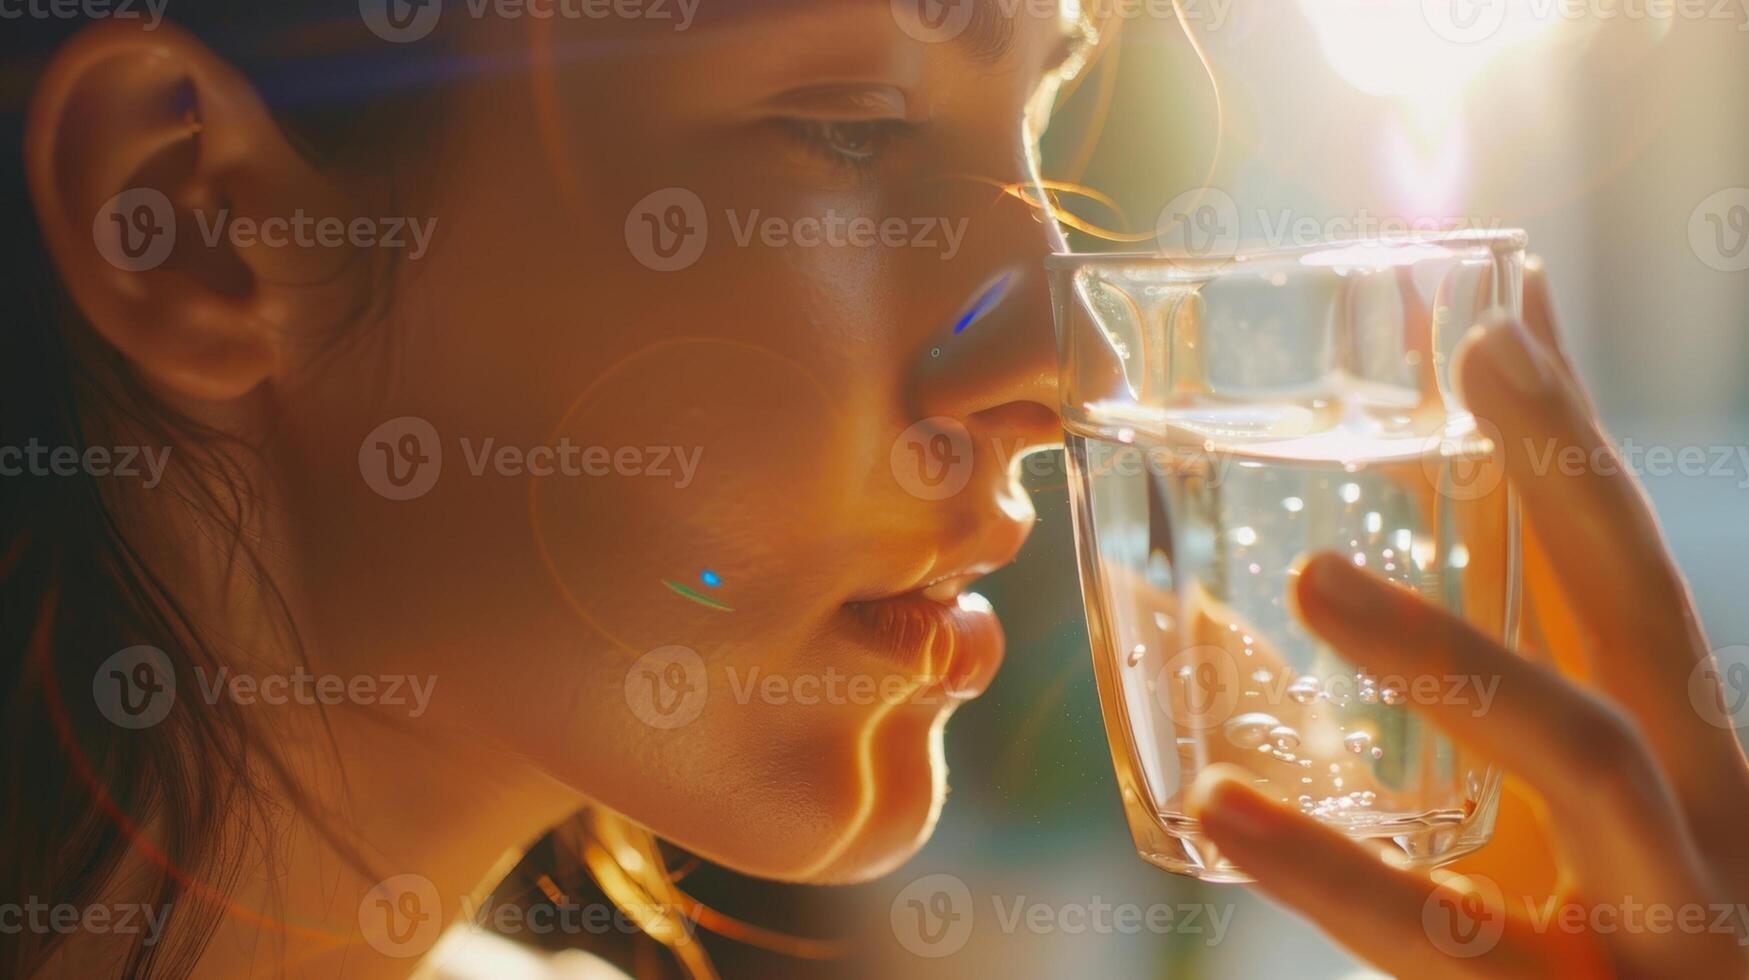 de kvinna tar en smutta av vatten till stanna kvar hydratiserad och känner en känsla av lugna tvätta över henne som de värme Arbetar dess sätt genom varje tum av henne kropp. foto